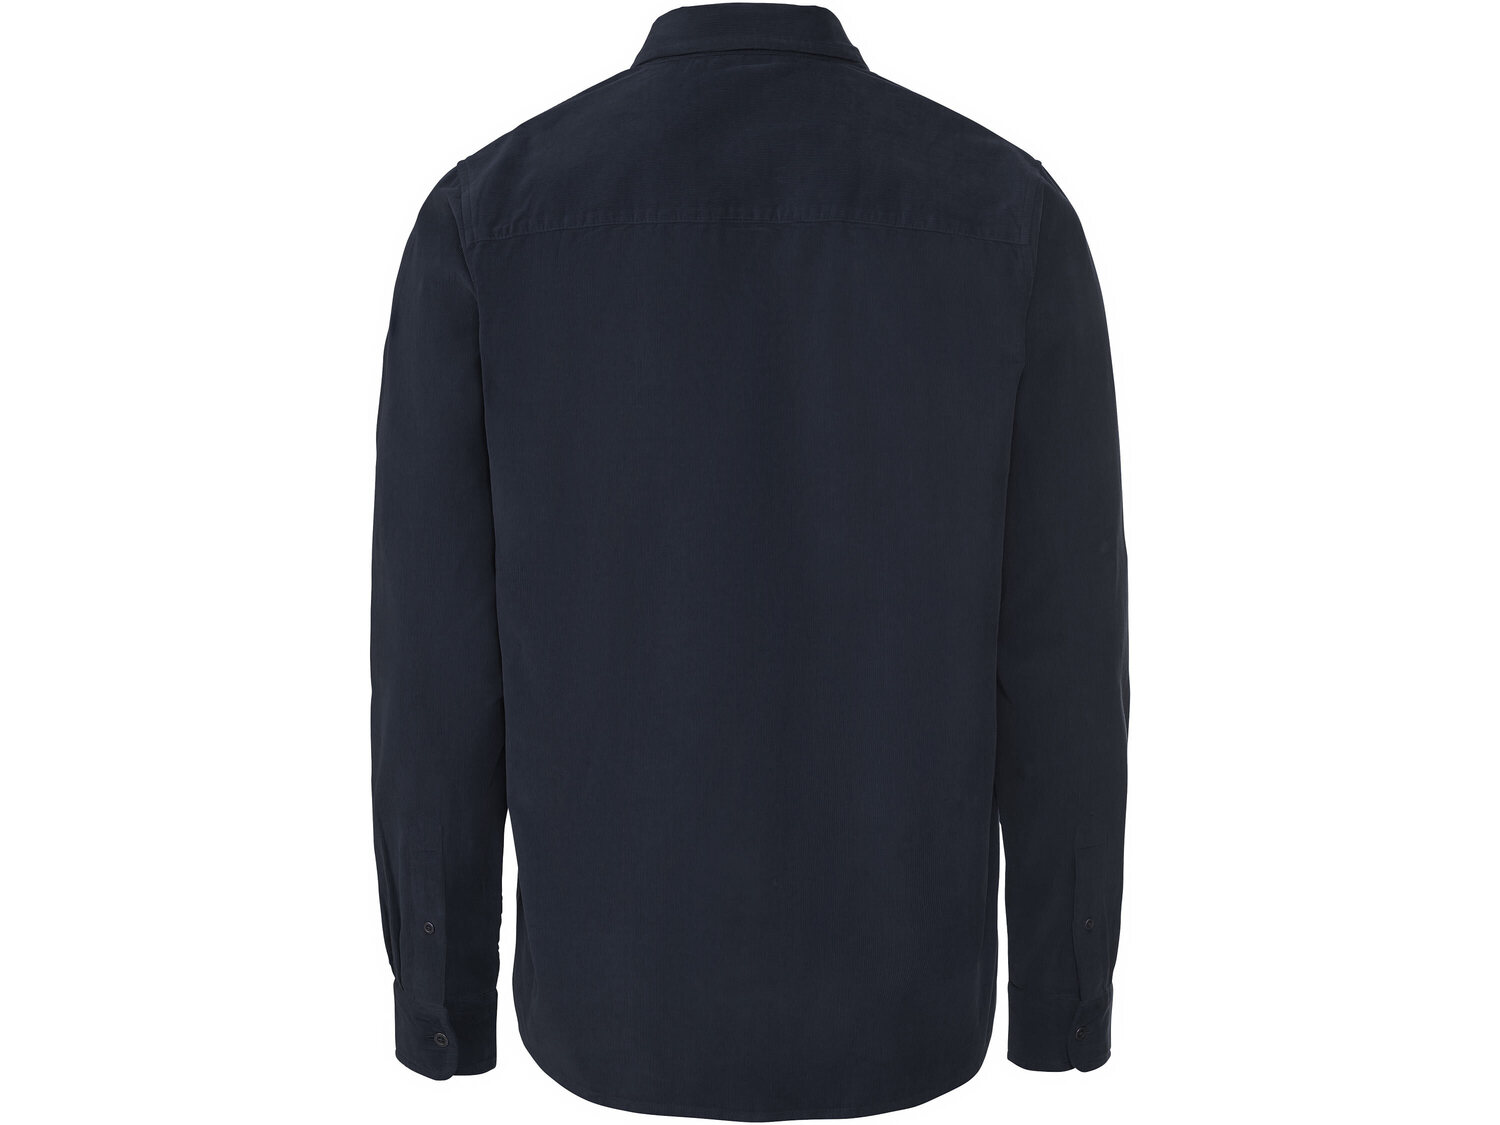 Koszula sztruksowa Livergy, cena 39,99 PLN 
- 100% bawełny
- rozmiary: M-XL
Dostępne ...